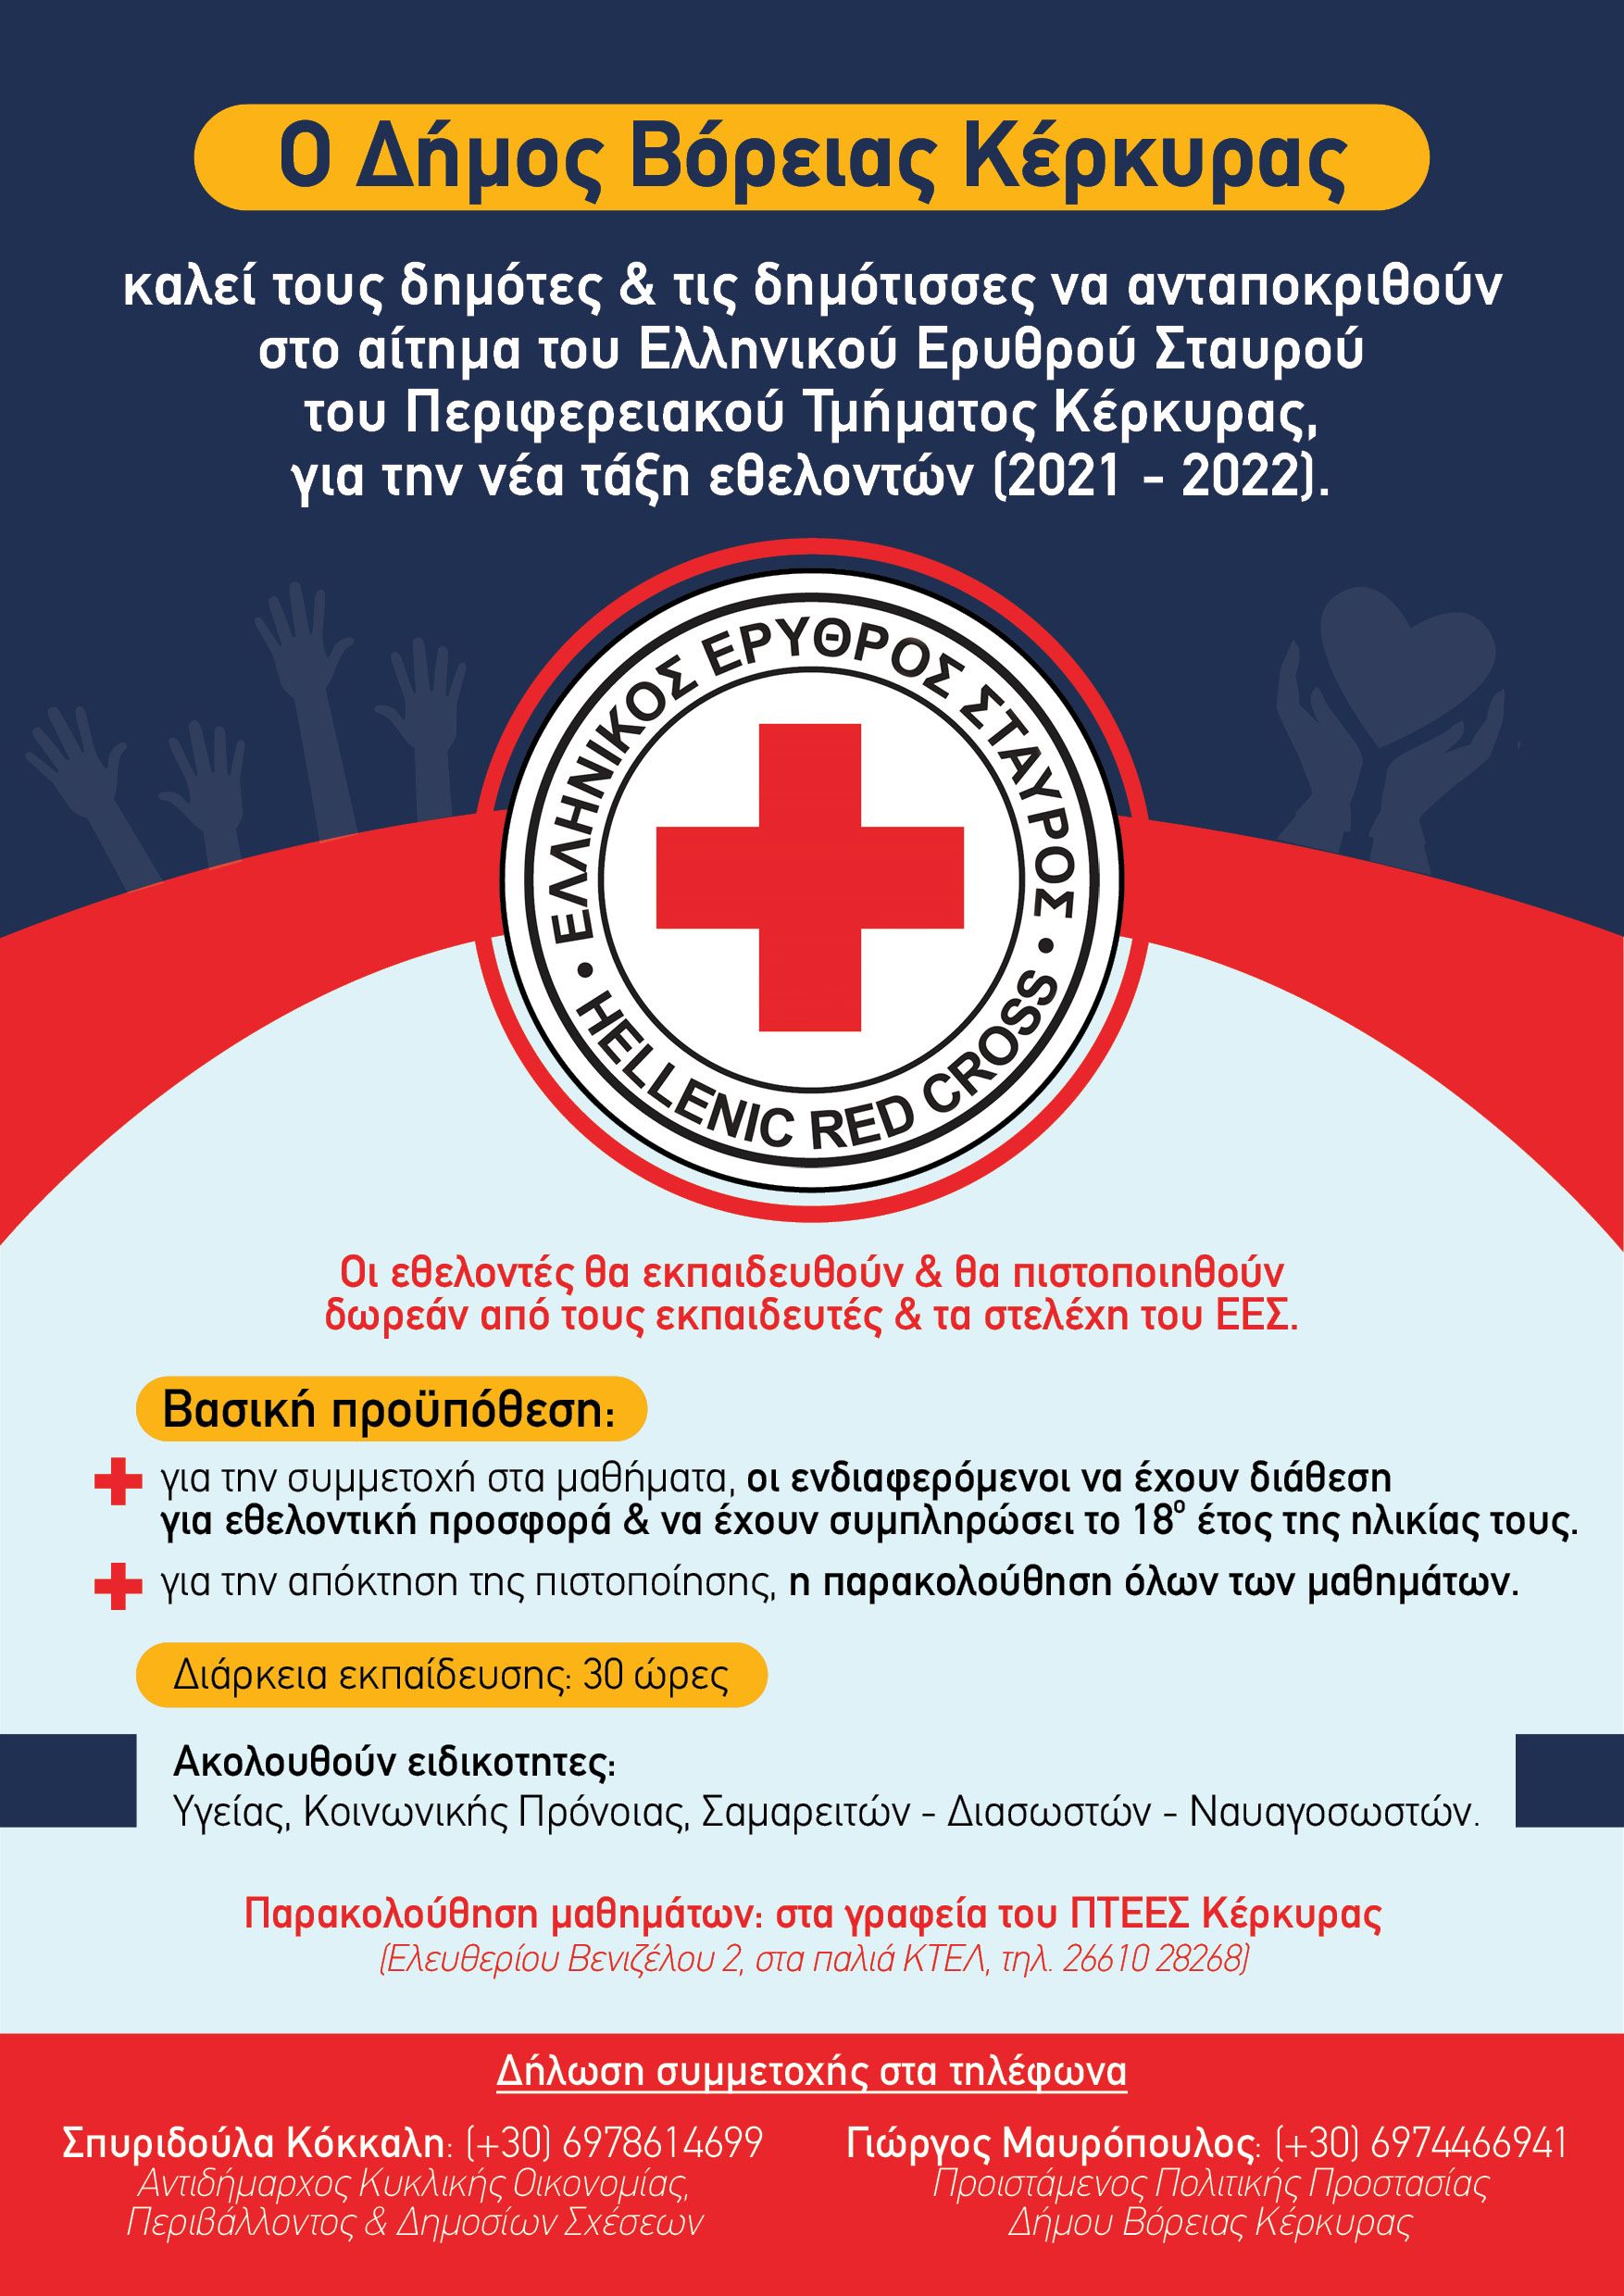 Κάλεσμα του Ερυθρού Σταυρού για εθελοντές στον Δήμο Βόρειας Κέρκυρας